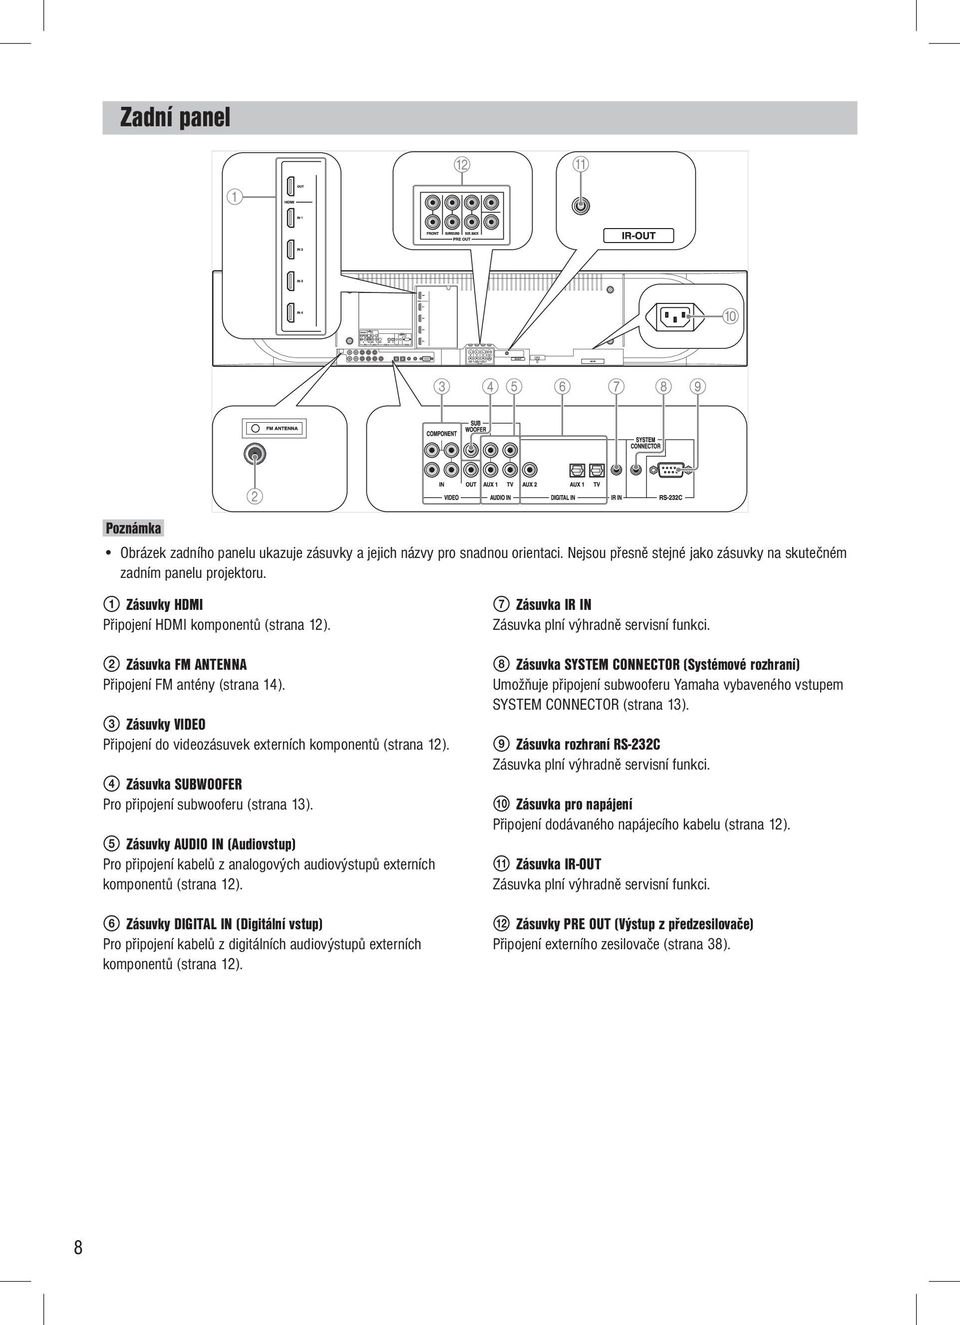 4 Zásuvka SUBWOOFER Pro připojení subwooferu (strana 13). 5 Zásuvky AUDIO IN (Audiovstup) Pro připojení kabelů z analogových audiovýstupů externích komponentů (strana 12).